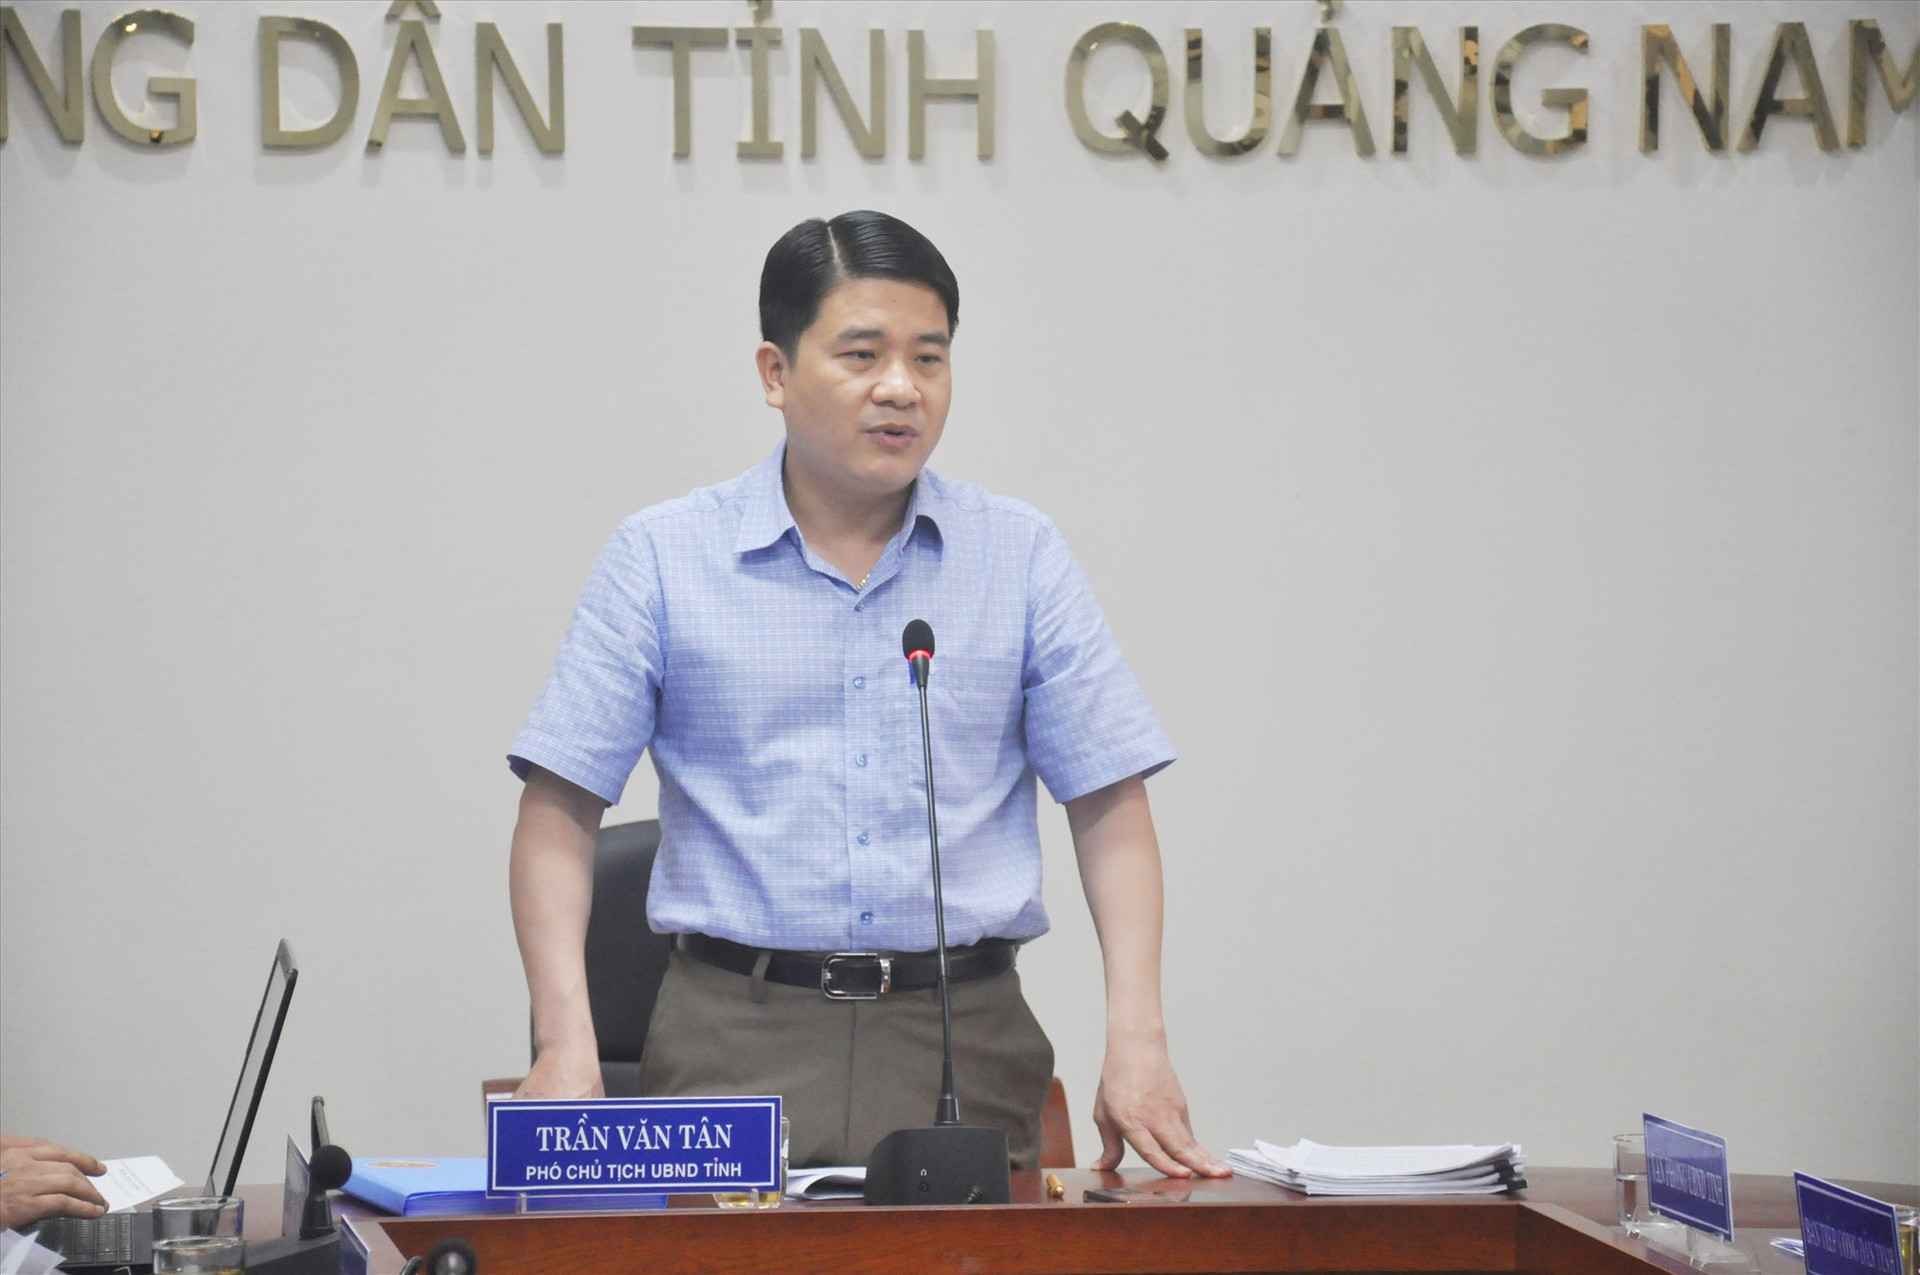 Phó Chủ tịch UBND tỉnh Trần Văn Tân chủ trì buổi tiếp dân định kỳ tháng 4.2021 của UBND tỉnh sáng 22.4. Ảnh: N.Đ